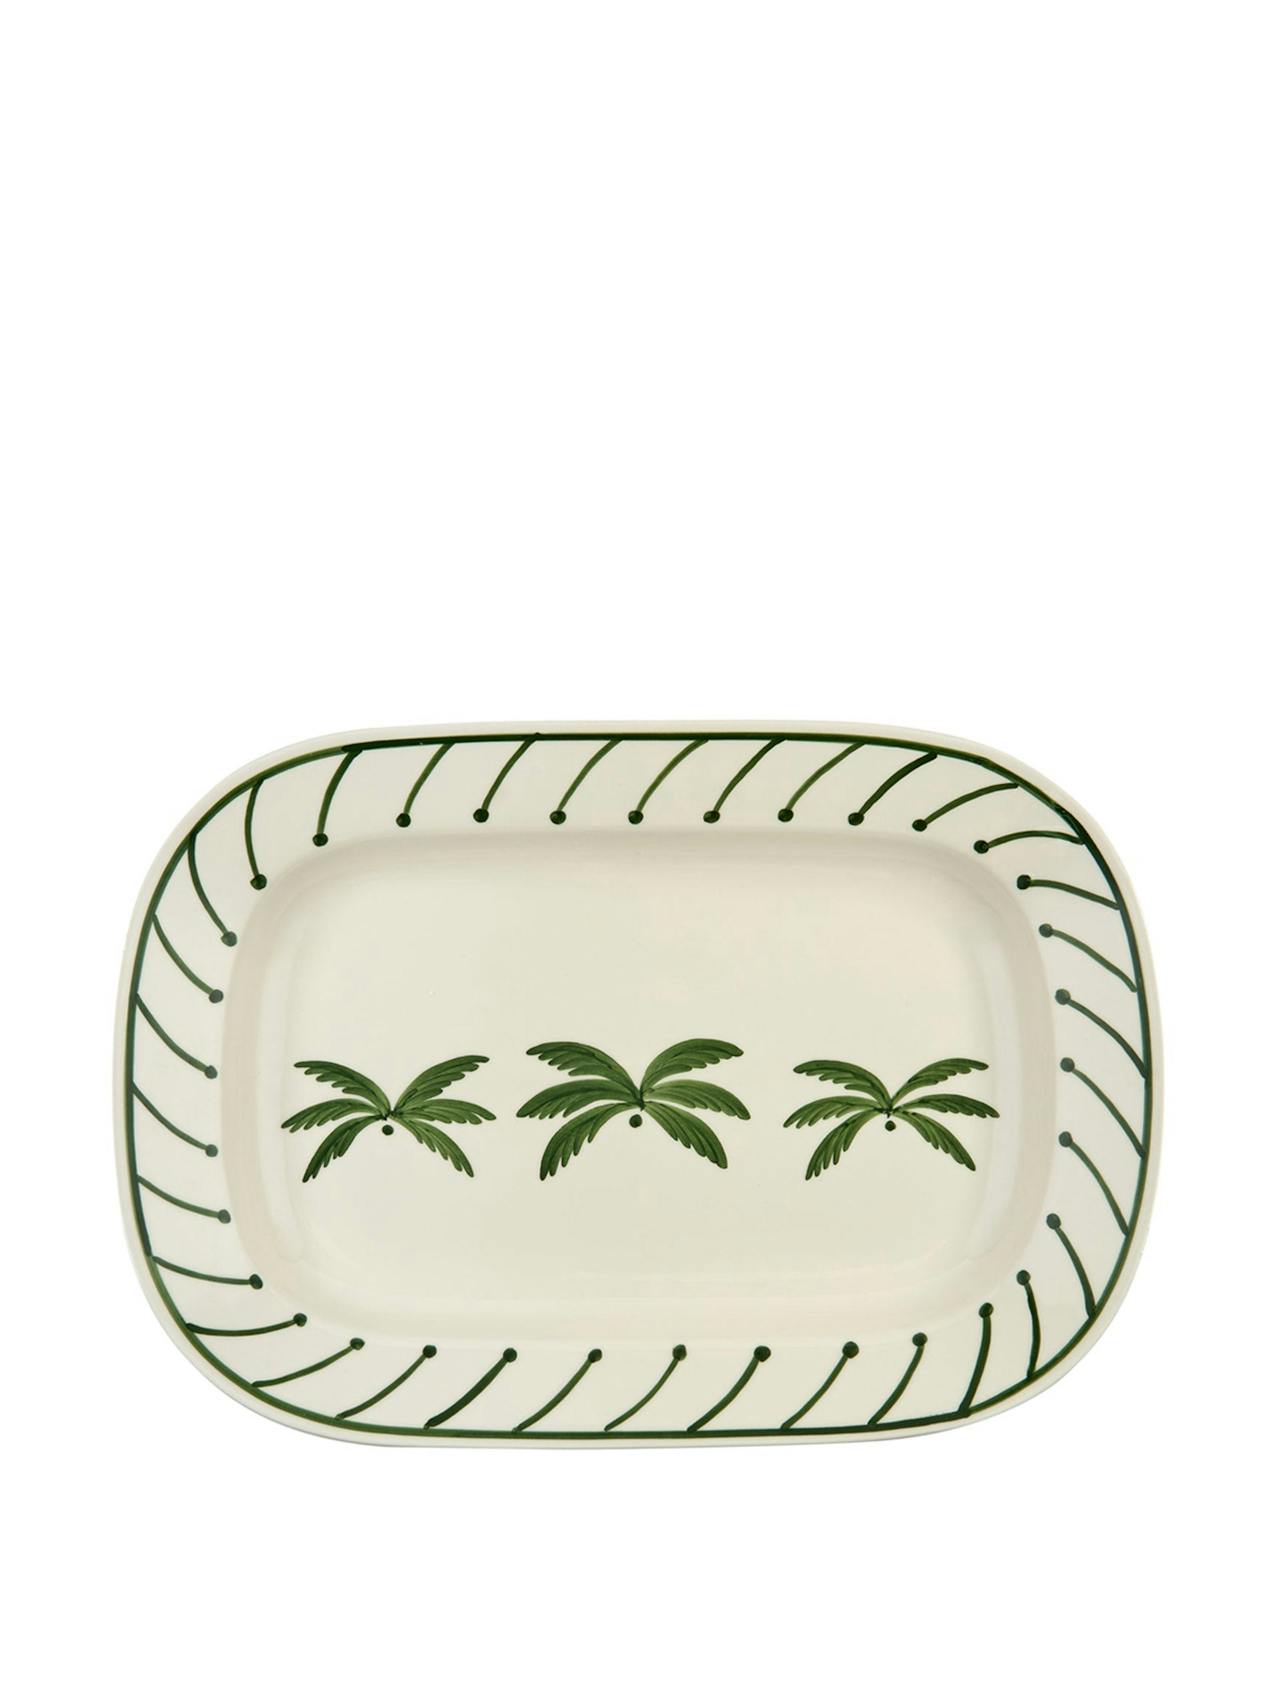 Green ceramic Palm Tree serving platter, medium